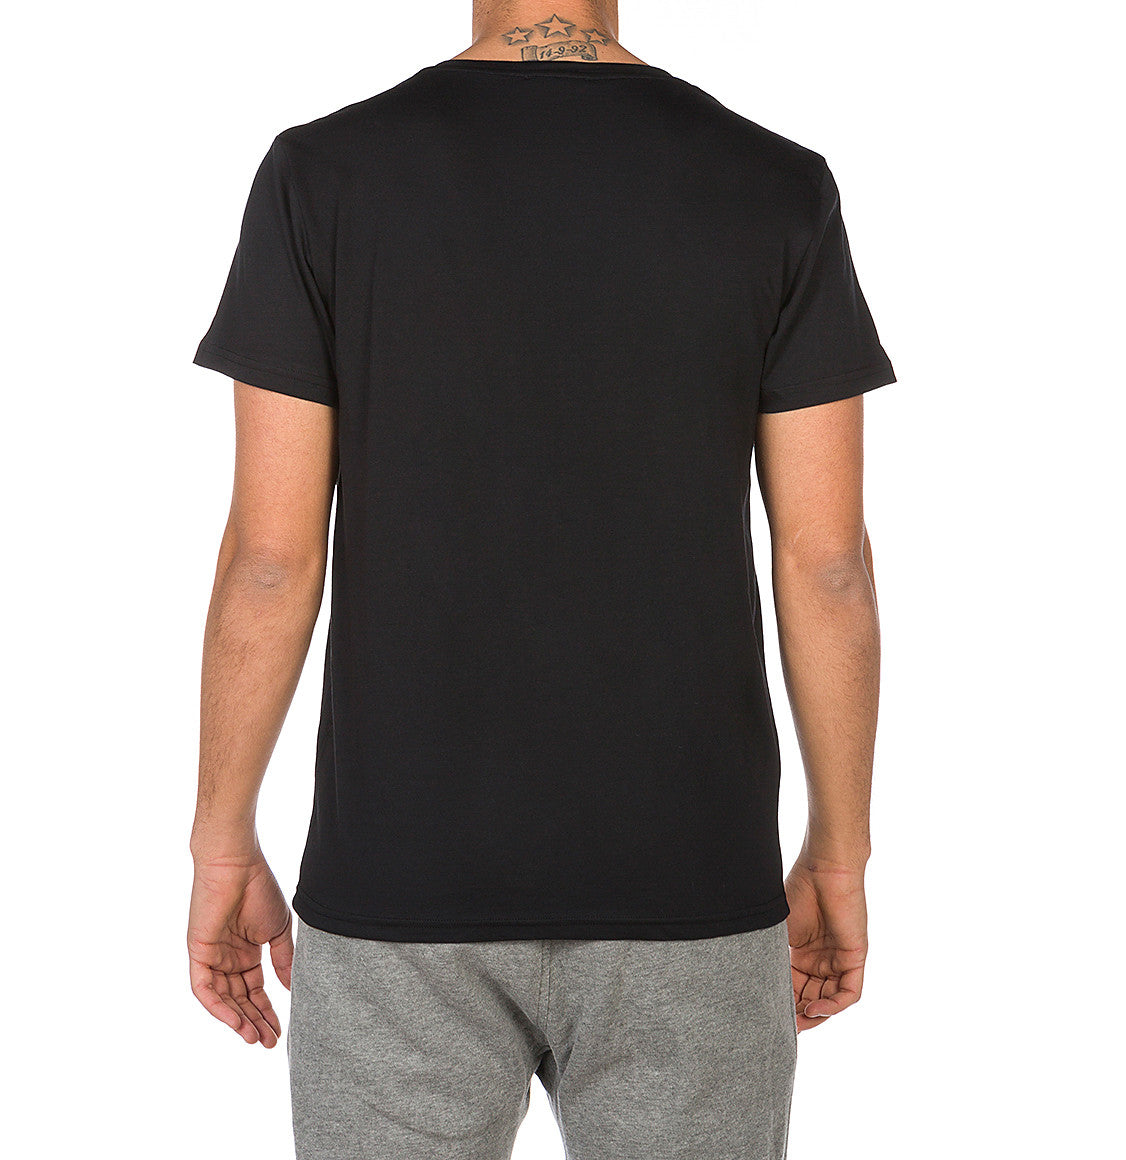 Modal Blend V-neck T-shirt Black